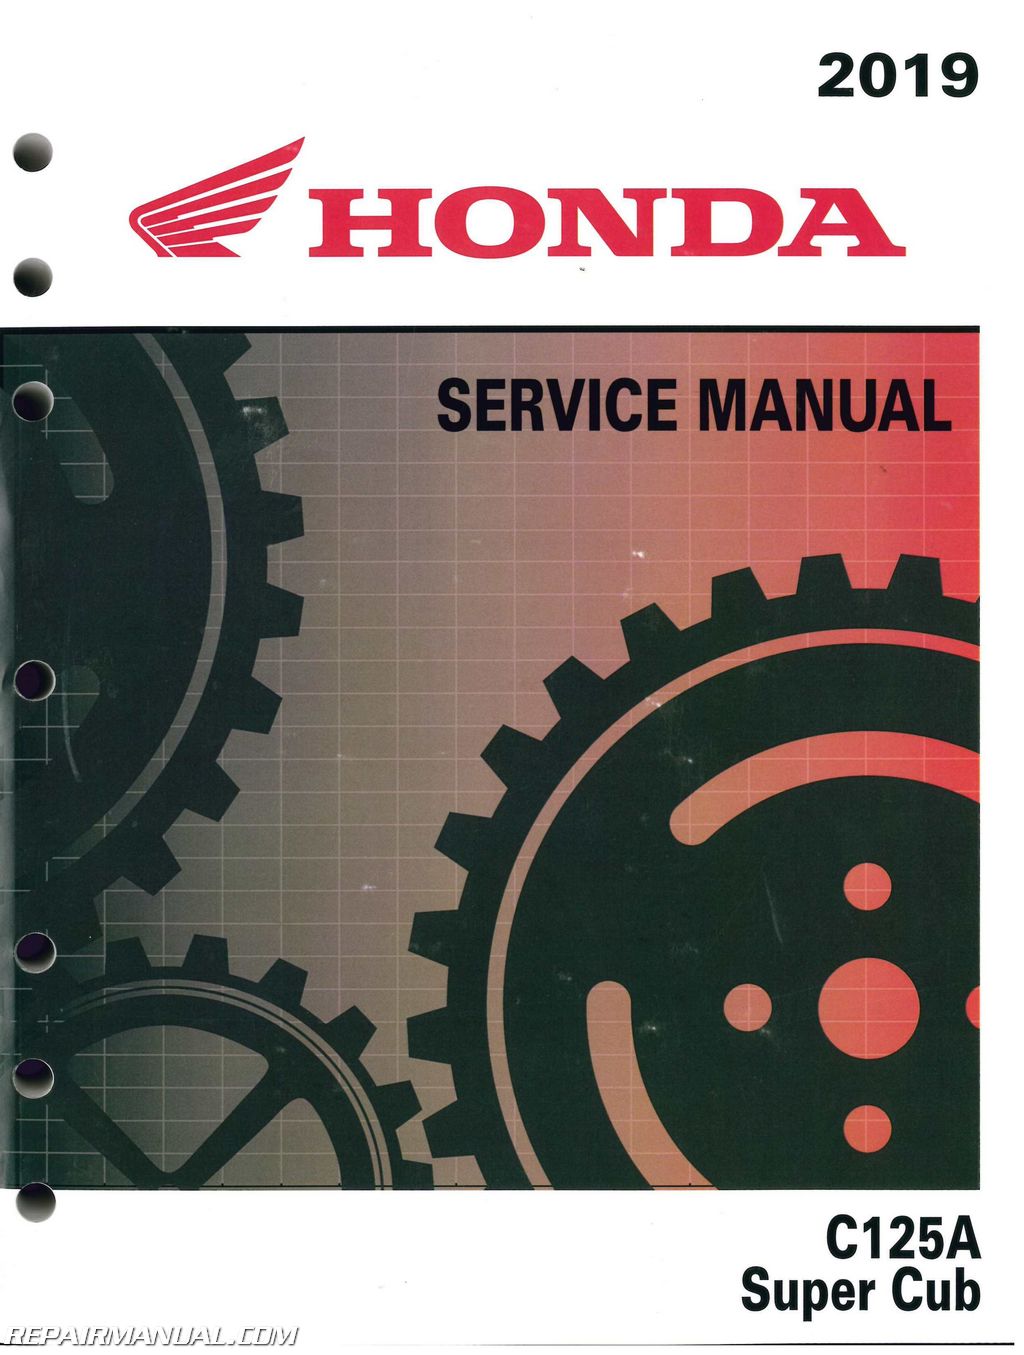 Honda super cub service manual